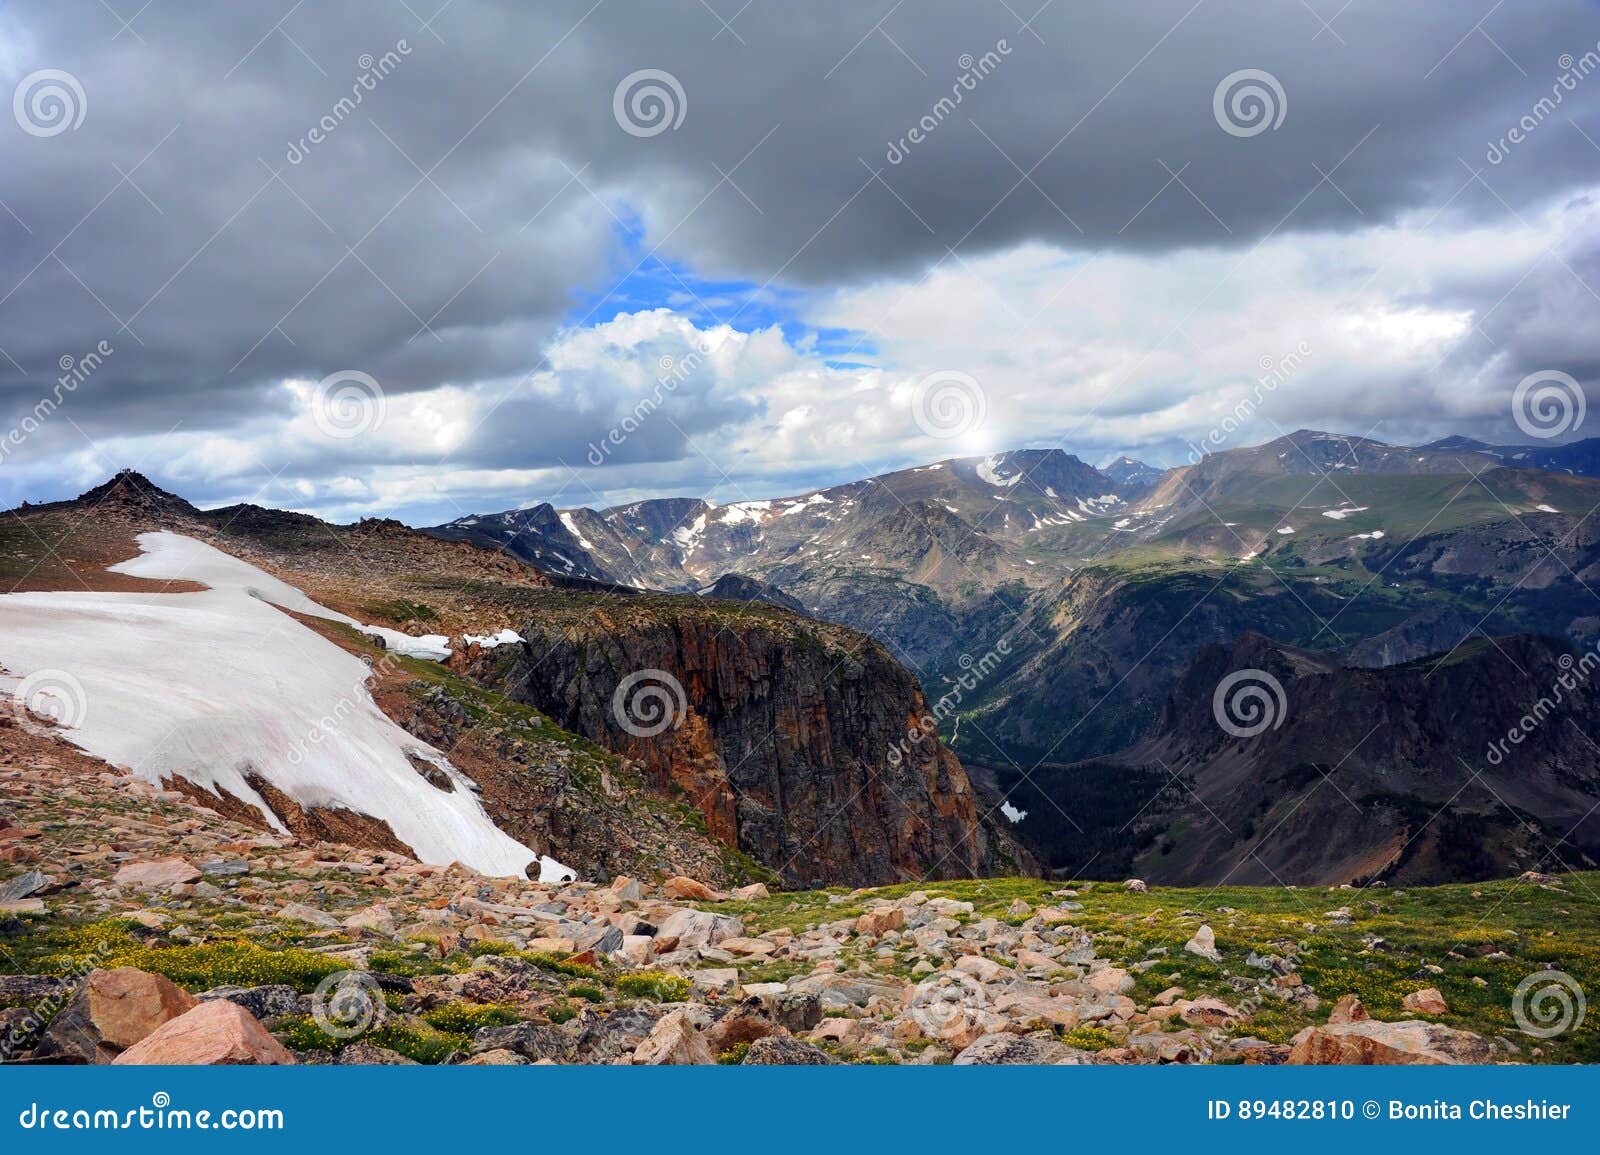 absaroka mountains in beartooth pass